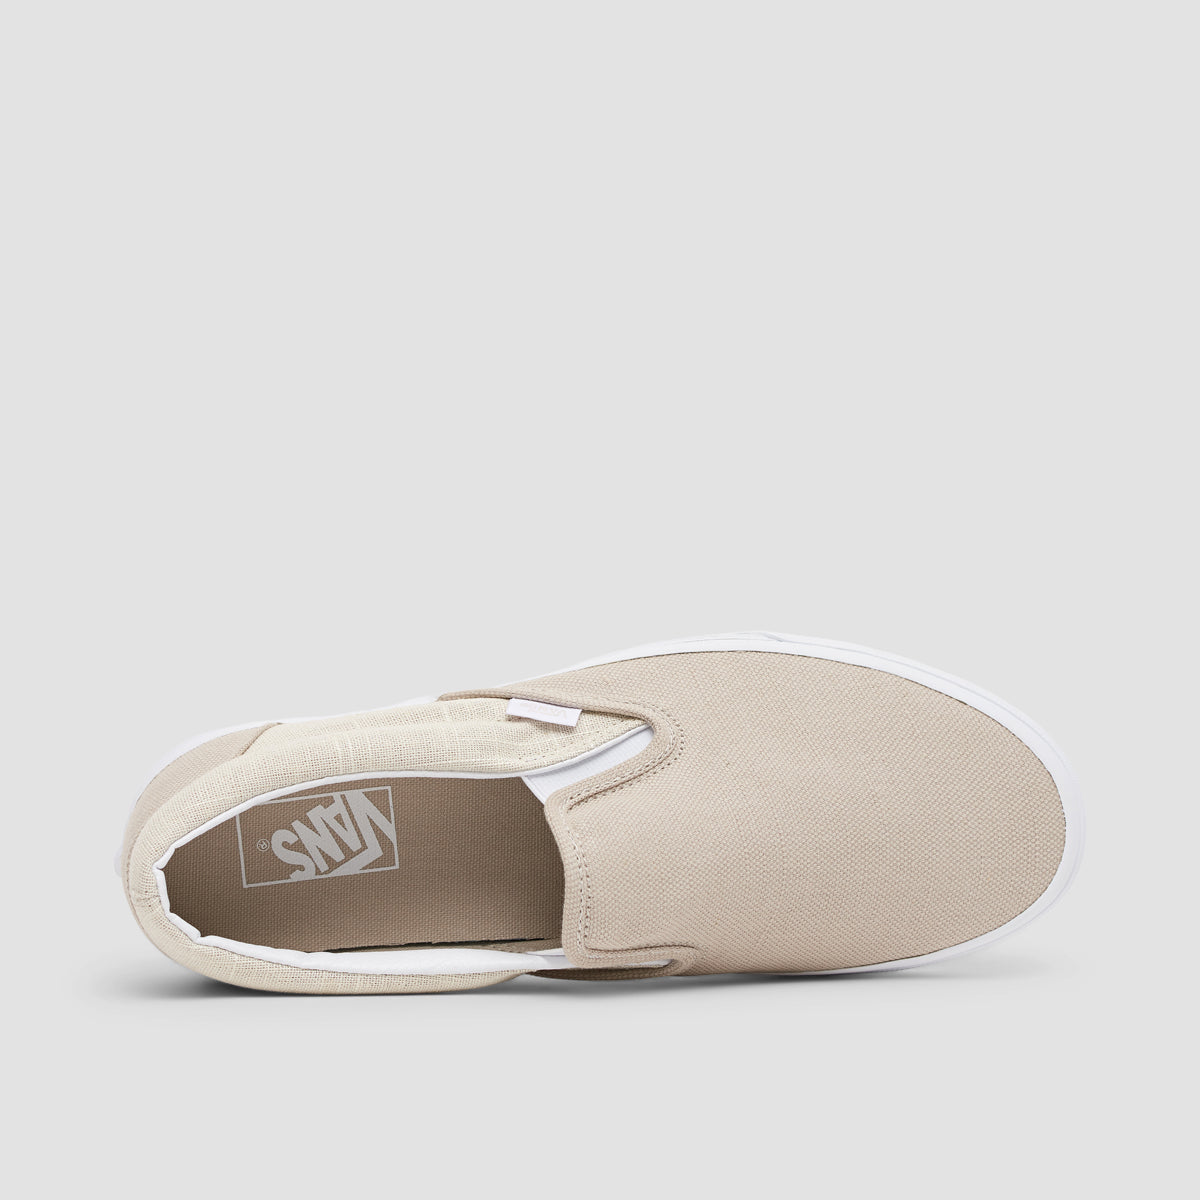 Vans Classic Slip-On Shoes - Summer Linen Natural - Unisex L